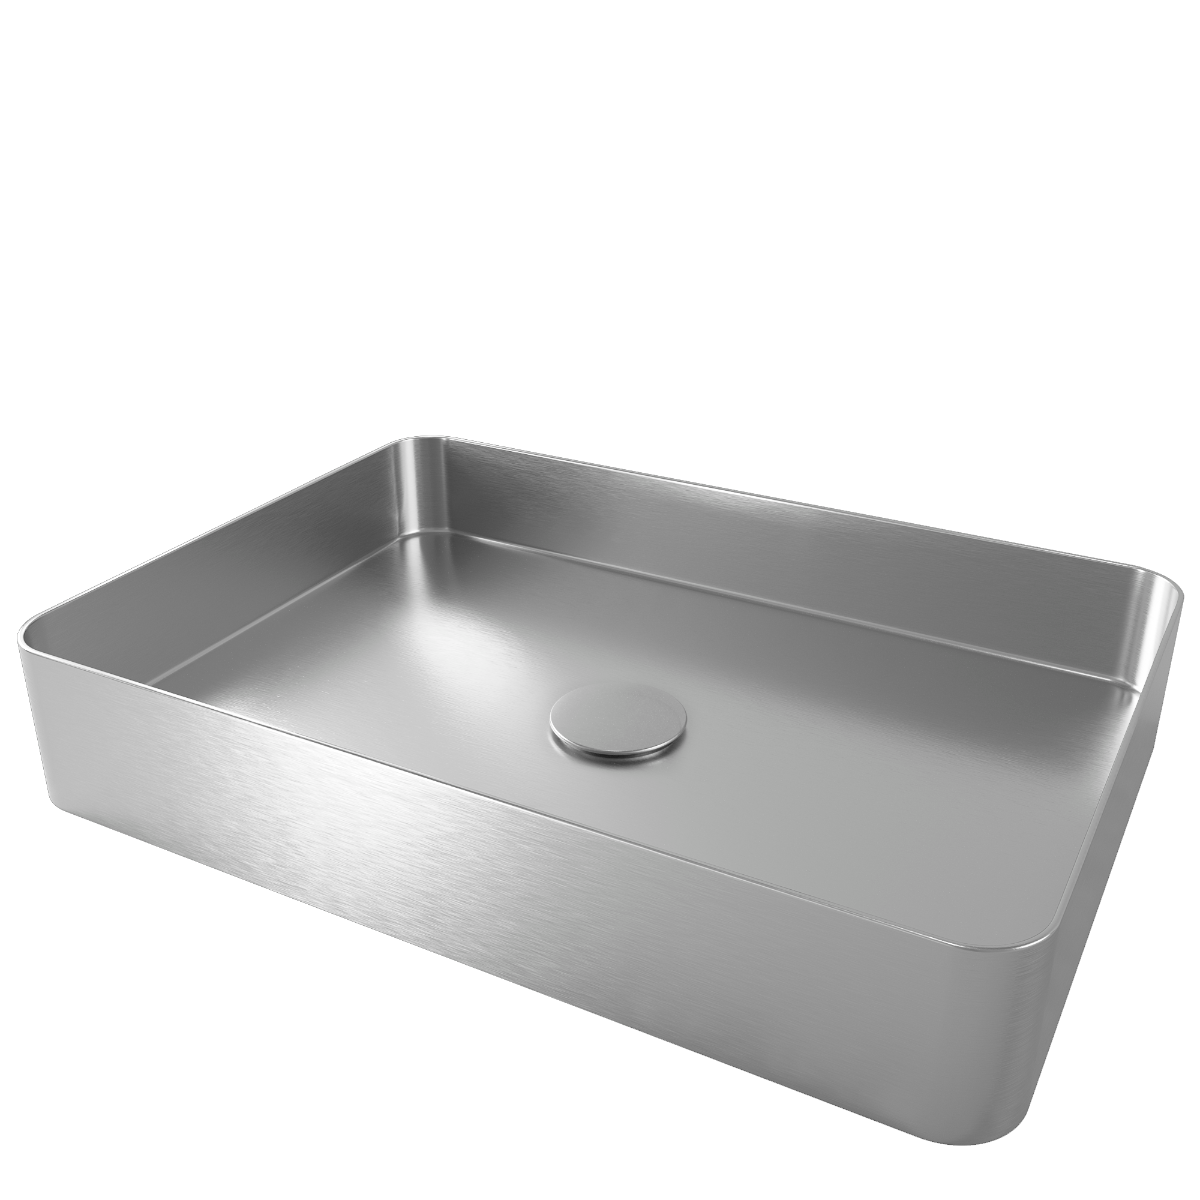 Stainless Steel Bathroom Sink - Nivito ED-500-B